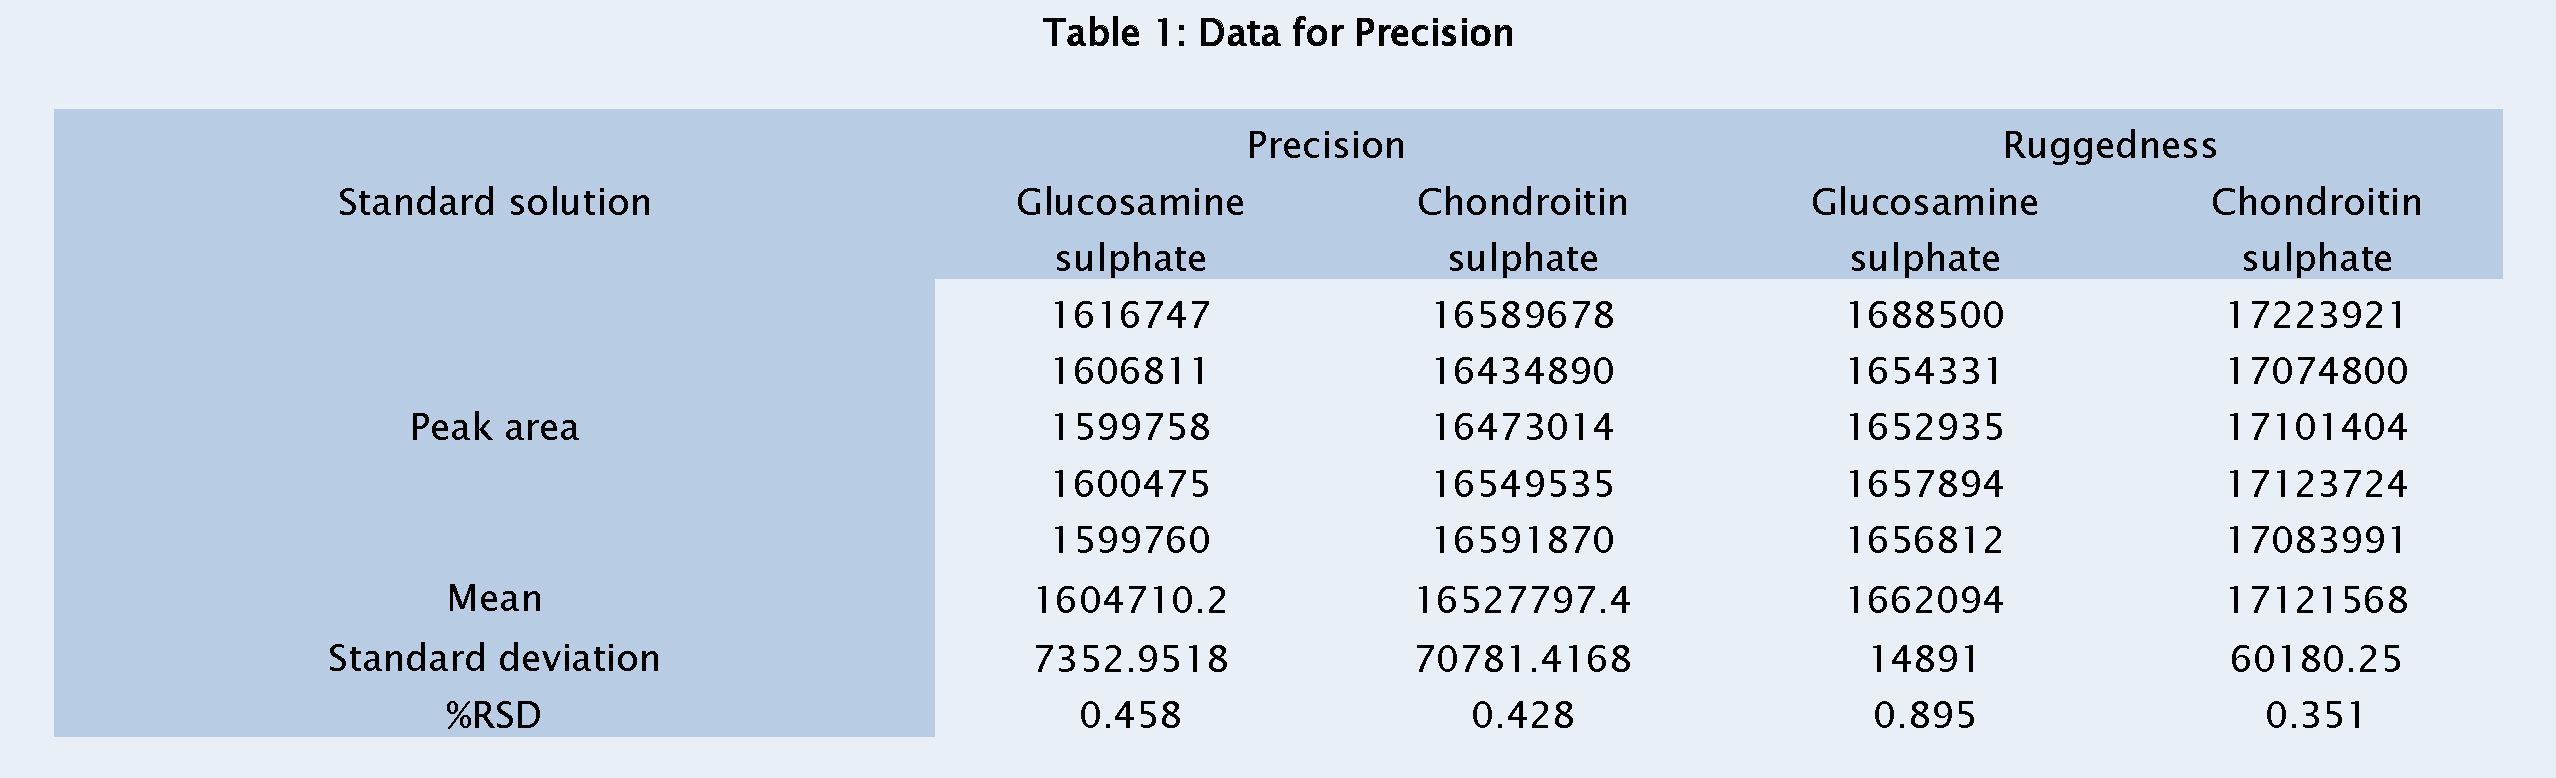 Pharmaceutical-Analysis-Data-for-Precision